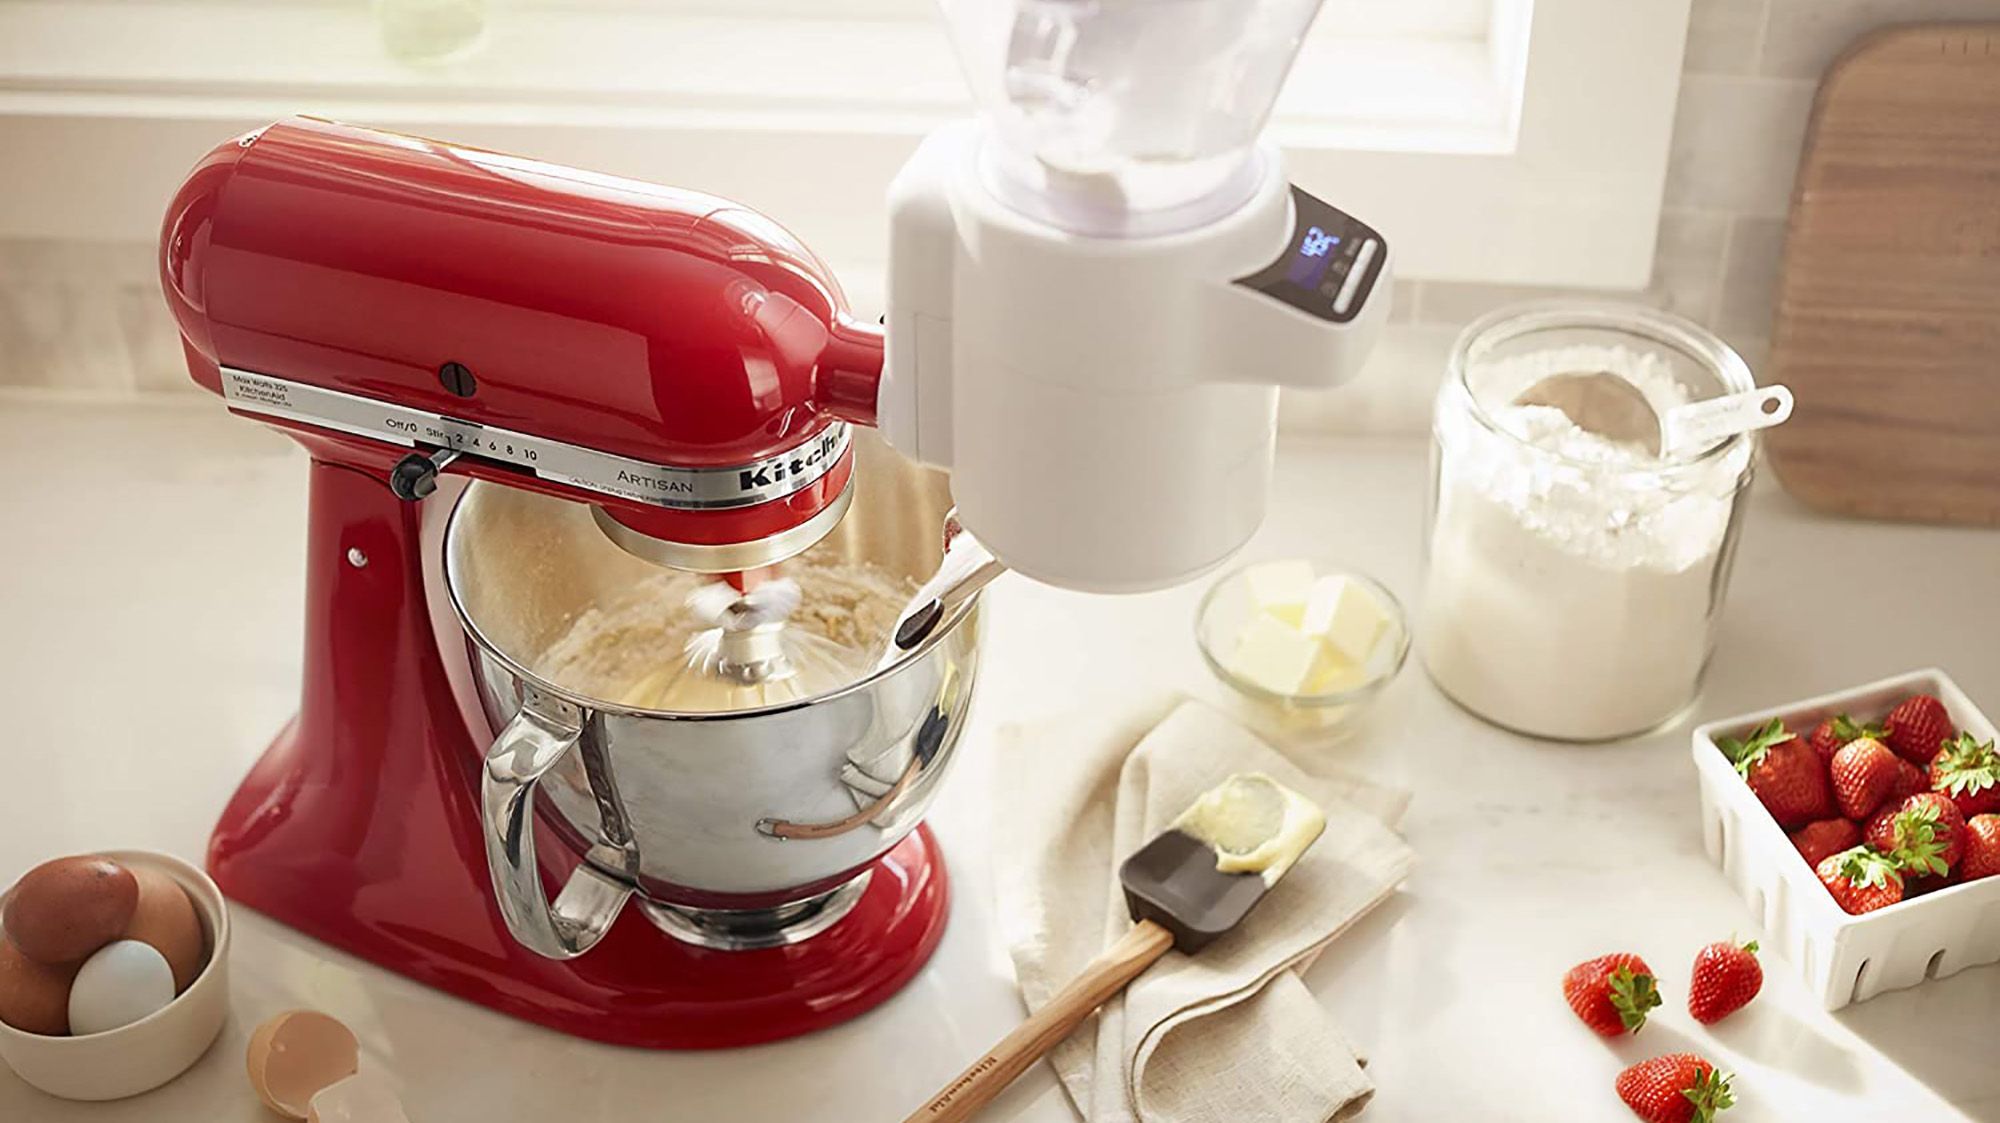 KitchenAid Save on the Mini mixer at Amazon | CNN Underscored